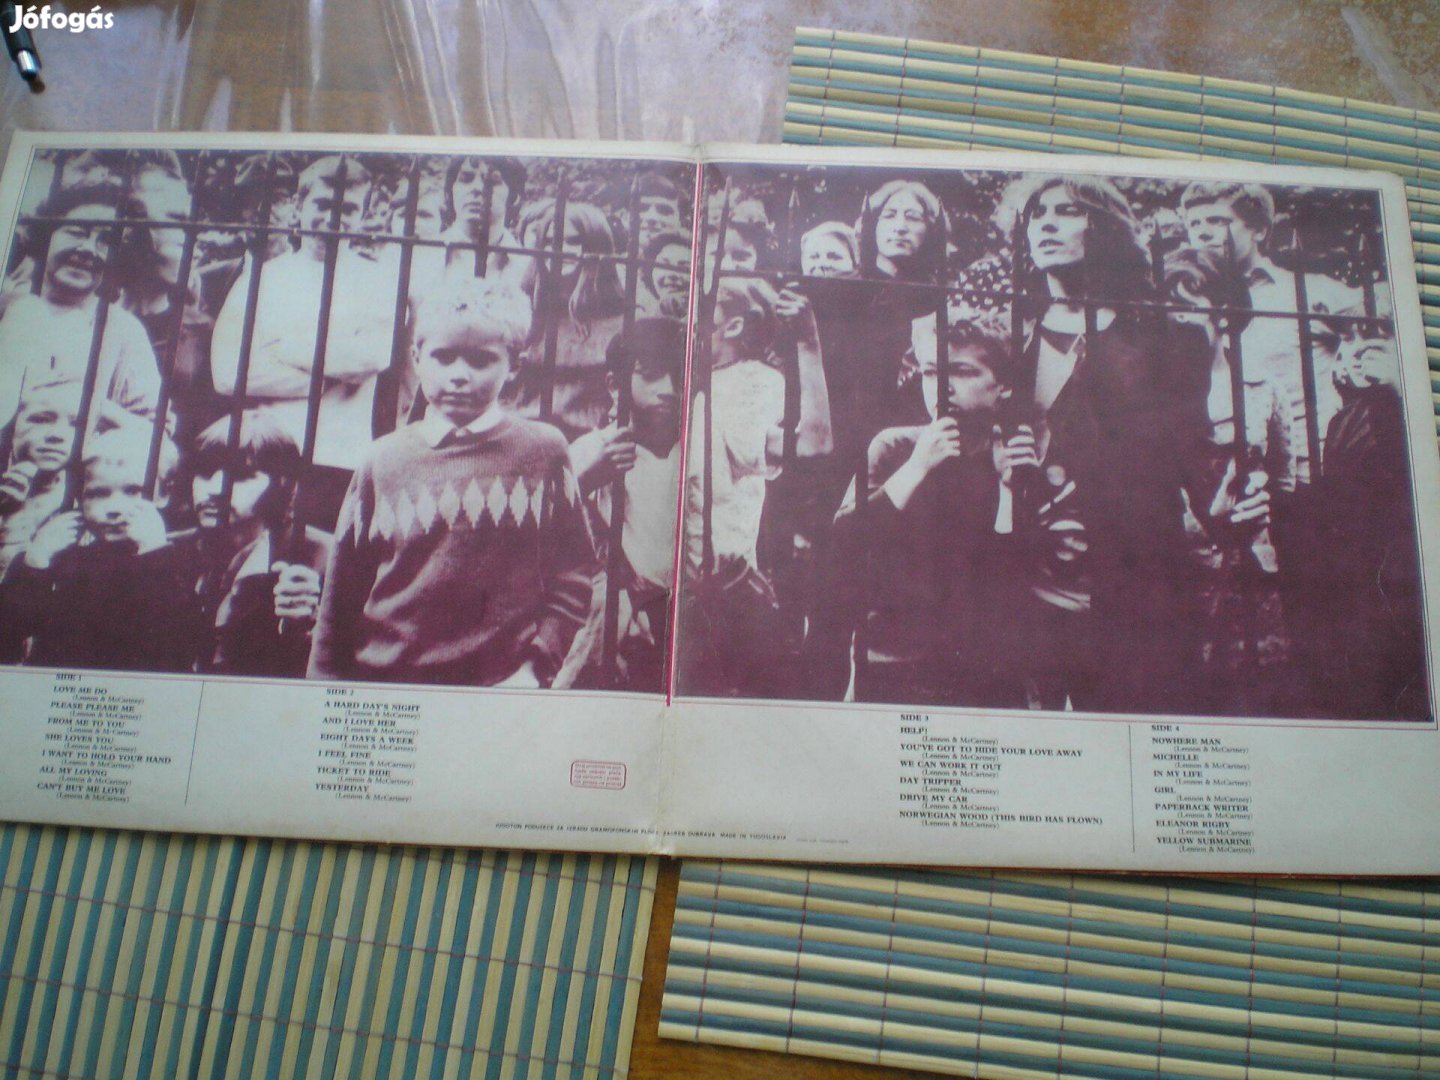 The Beatles 1962-1966 dupla bakelit lemez LP alig használt állapotban